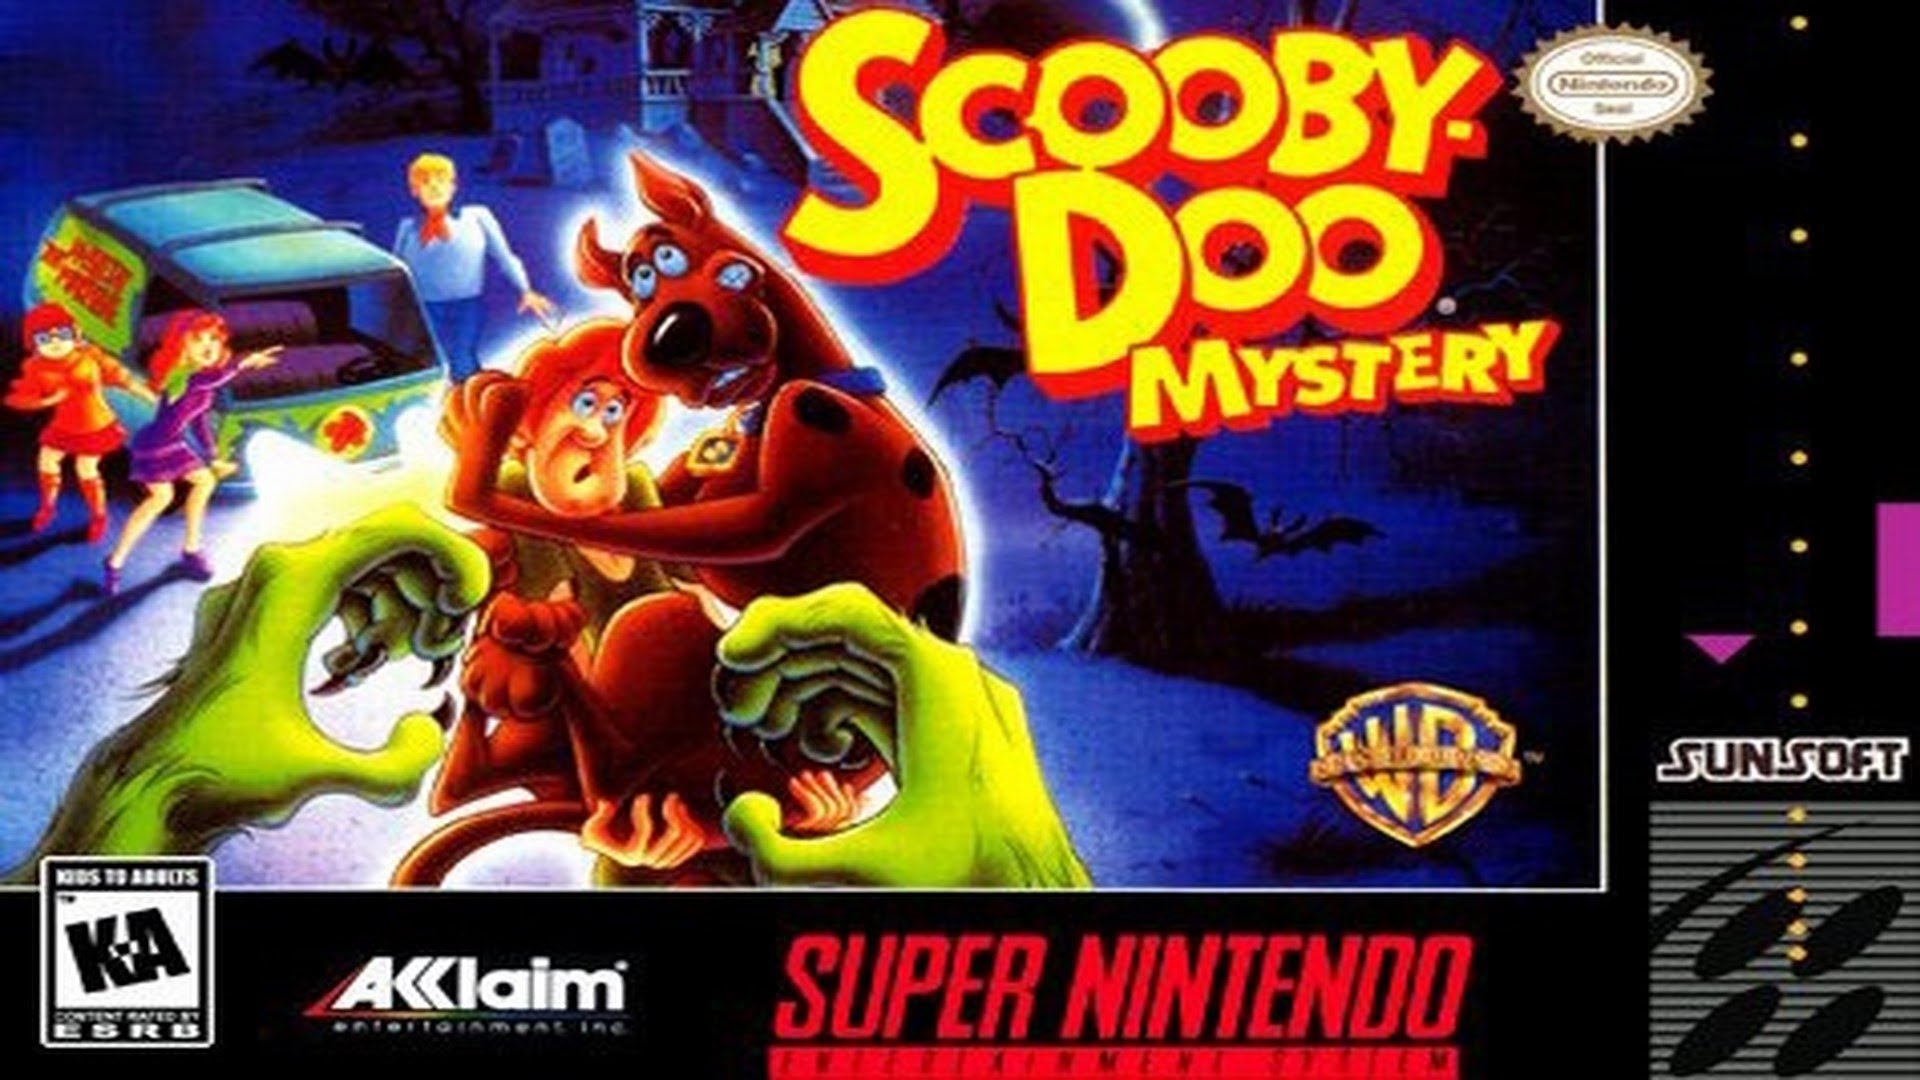 Scooby-Doo Mystery (USA) ROM